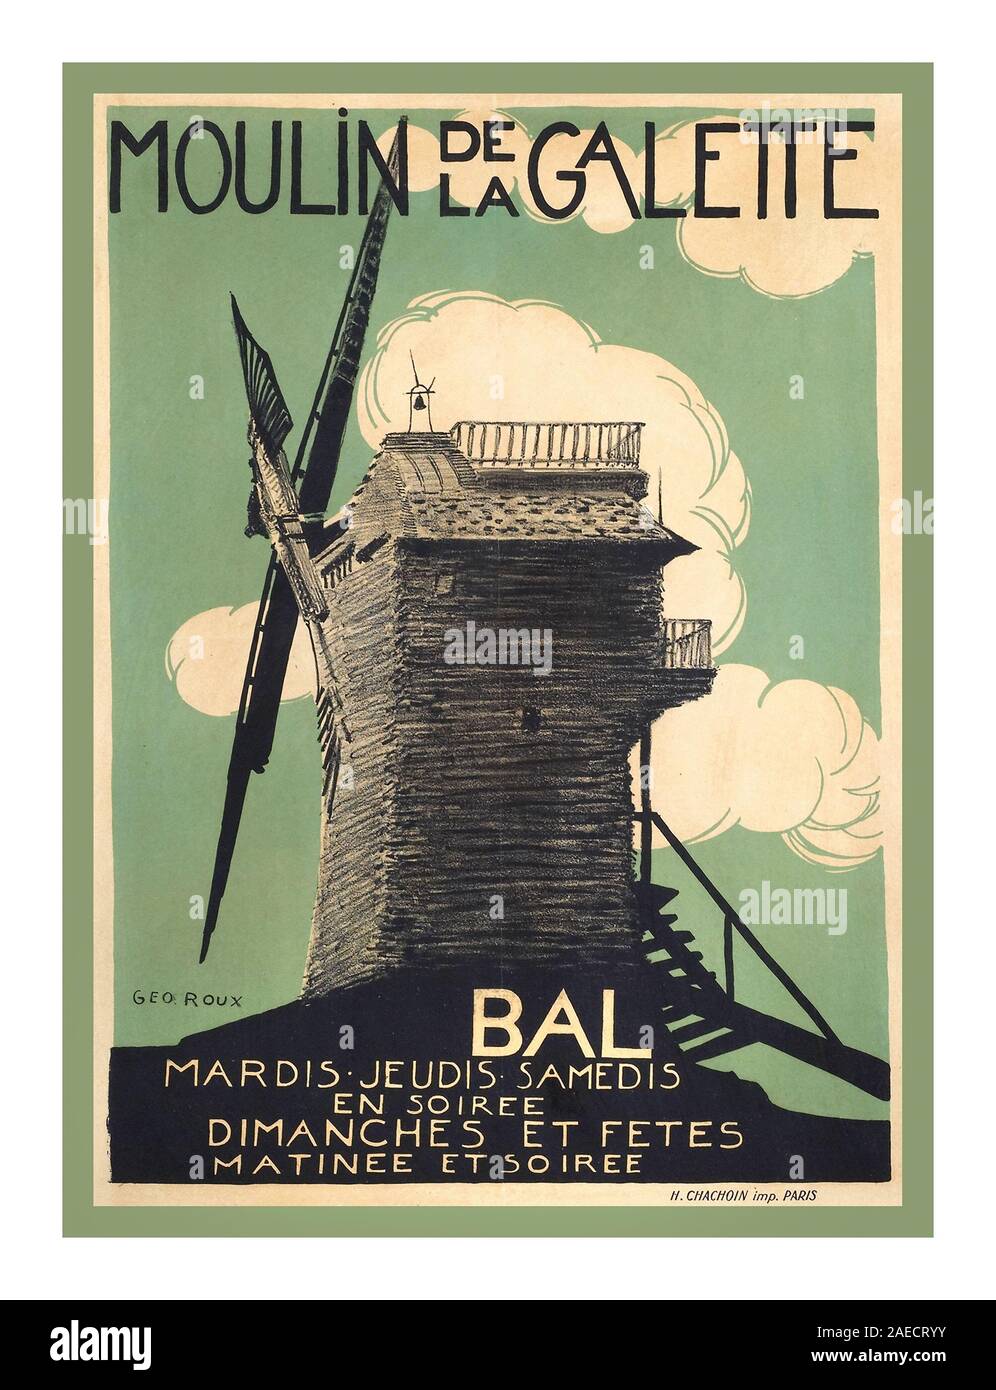 MOULIN DE LA GALETTE 1900 Vintage französische Unterhaltung Poster Moulin de la Galette Montmartre Paris Frankreich Moulin de la Galette ist eine Windmühle und assoziierten Unternehmen im oberen Viertel von Montmartre in Paris. Im 19. Jahrhundert, Le Moulin de la Galette vertreten Umleitung für die Pariser auf der Suche nach Unterhaltung, ein Glas Wein und Brot aus Mehl von der Mühle gemacht. Künstler wie Renoir, Van Gogh und Pissarro haben verewigt Le Moulin de la Galette das Bemerkenswerteste war Renoirs festliche Malerei, Bal du Moulin de la Galette. Stockfoto